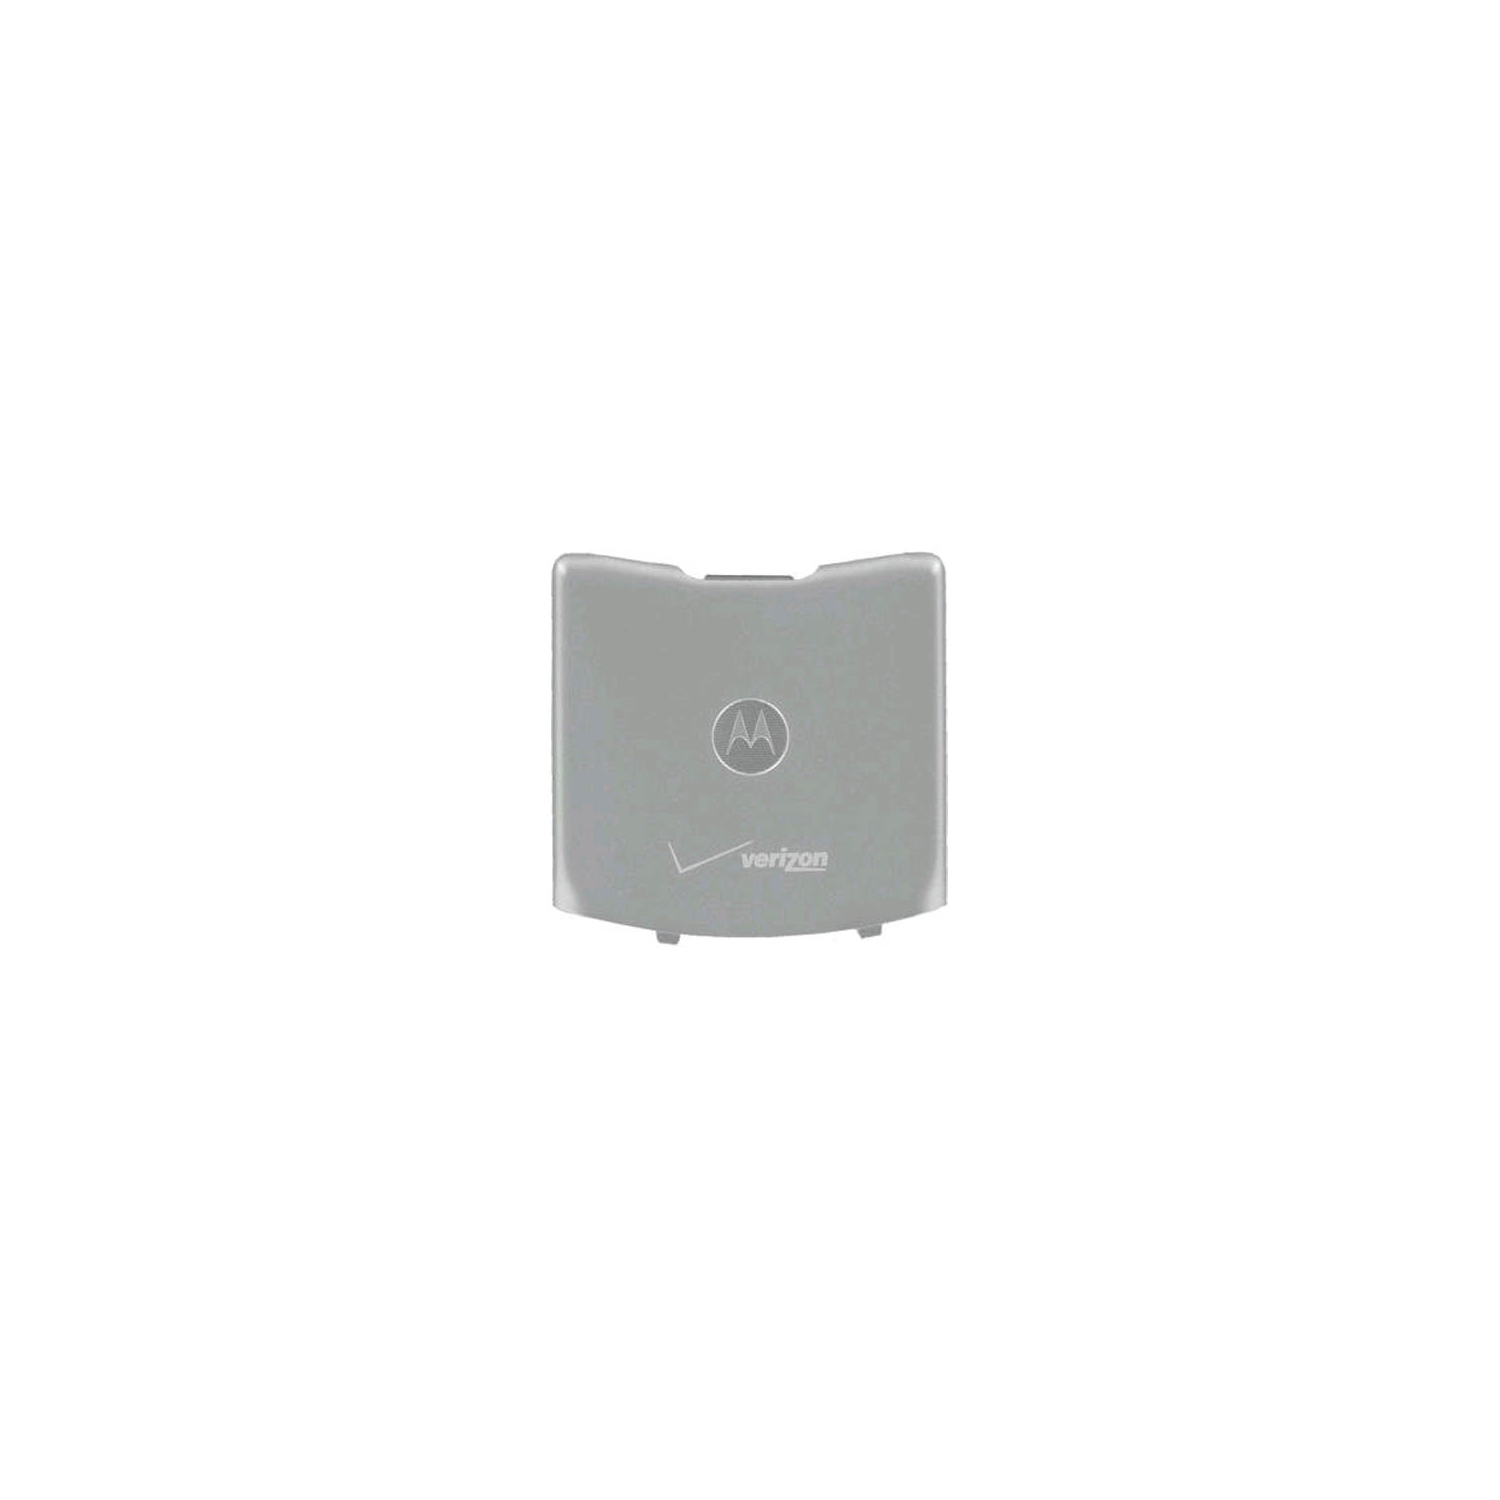 OEM Motorola RAZR V3m Standard Battery Door Cover - Silver (Bulk Packaging)